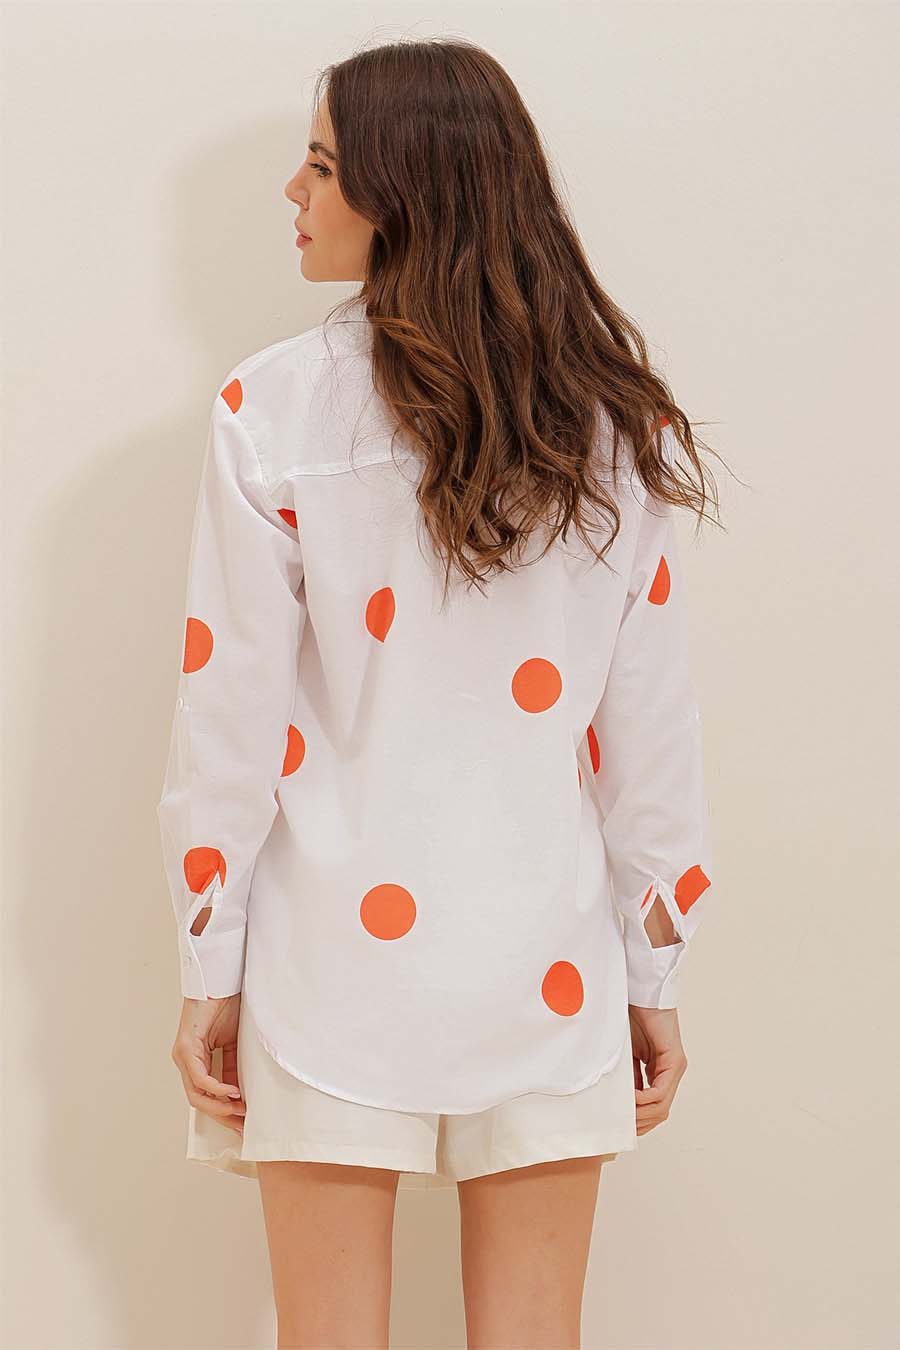 Γυναικείο πουκάμισο Millie, Λευκό/Πορτοκάλι 6